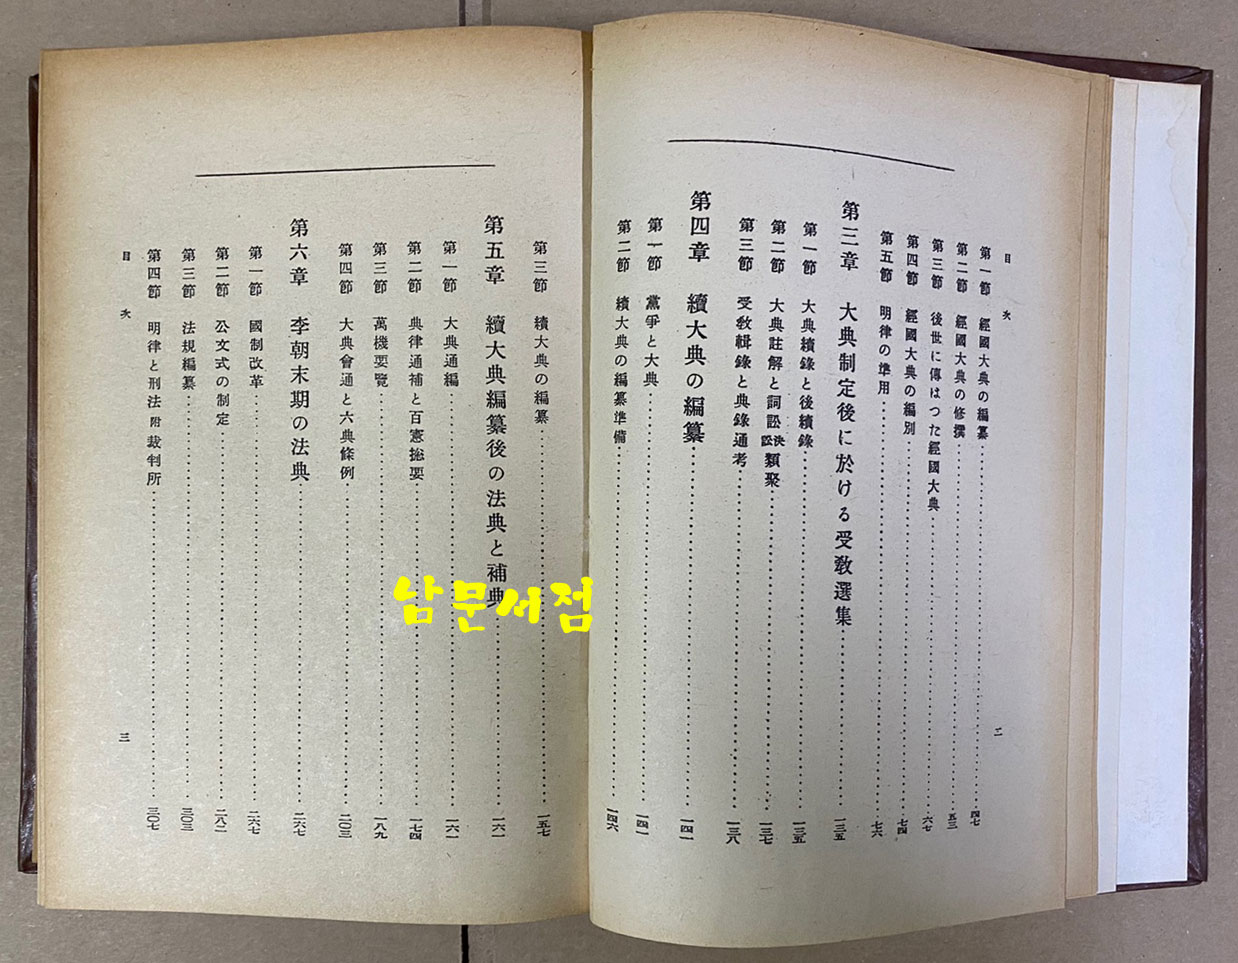 李朝法典考 (조선법제집상권) 이조법전고 1936년판 영인본